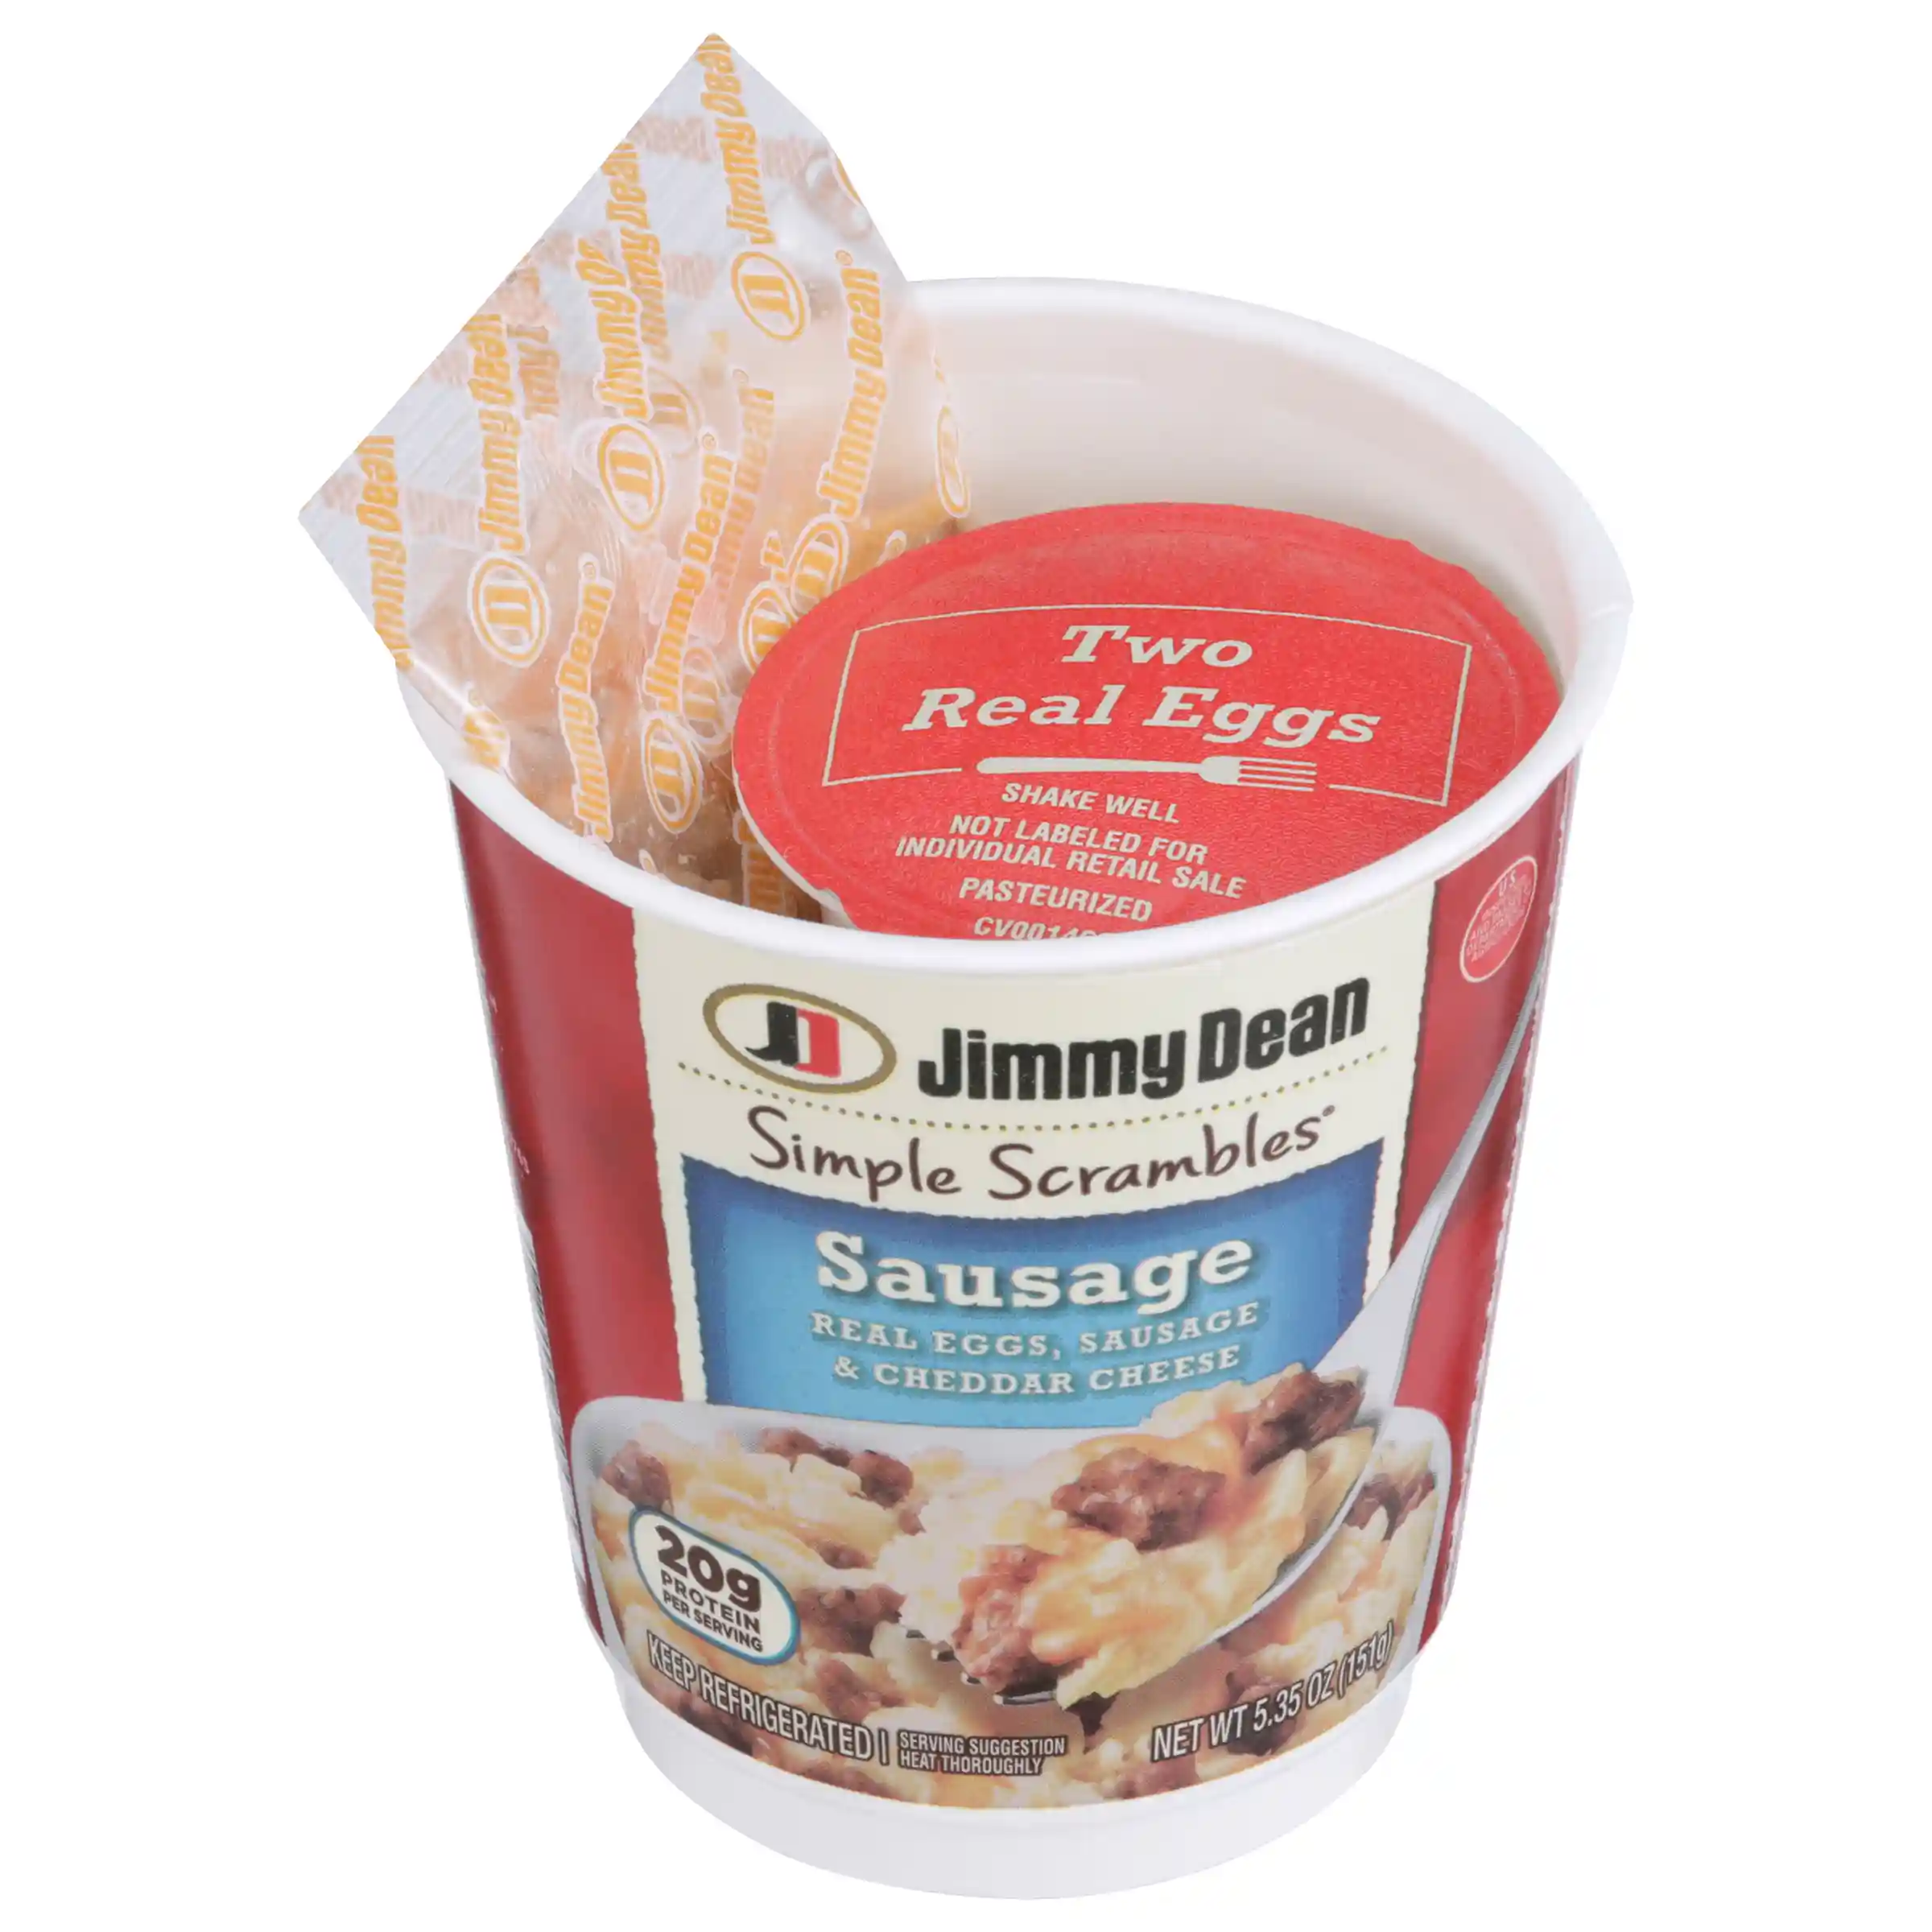 Jimmy Dean Simple Scrambles® Sausage, 5.35 oz.https://images.salsify.com/image/upload/s--JPCR_IN1--/q_25/e1raepbwwbqtltg3syyy.webp